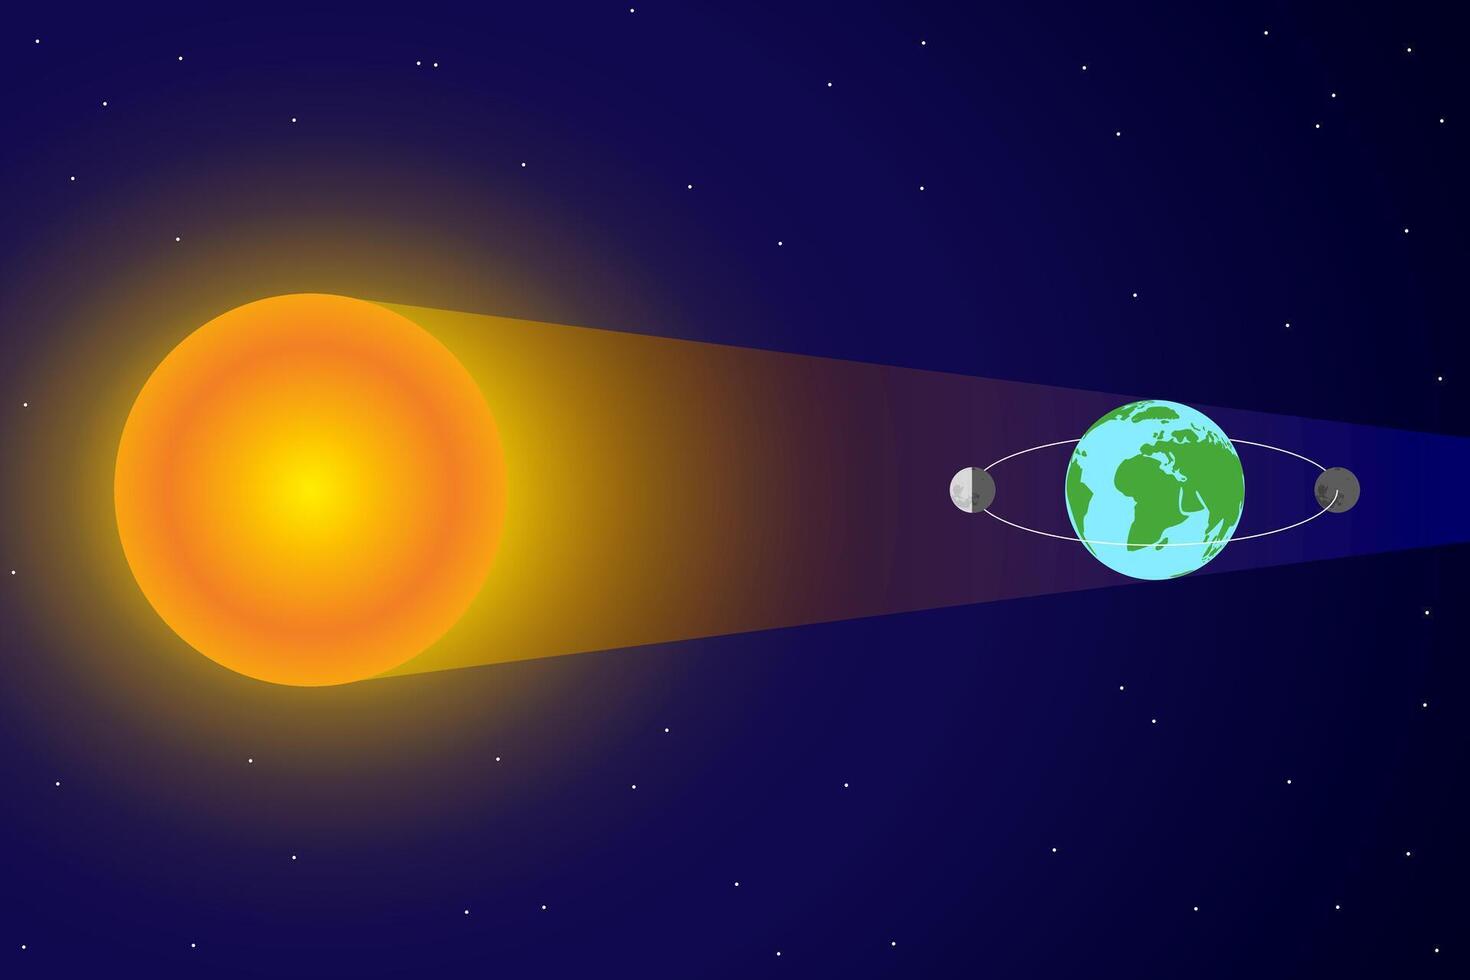 zonned verduistering en maan baan in de omgeving van aarde en zon met zonlicht vector